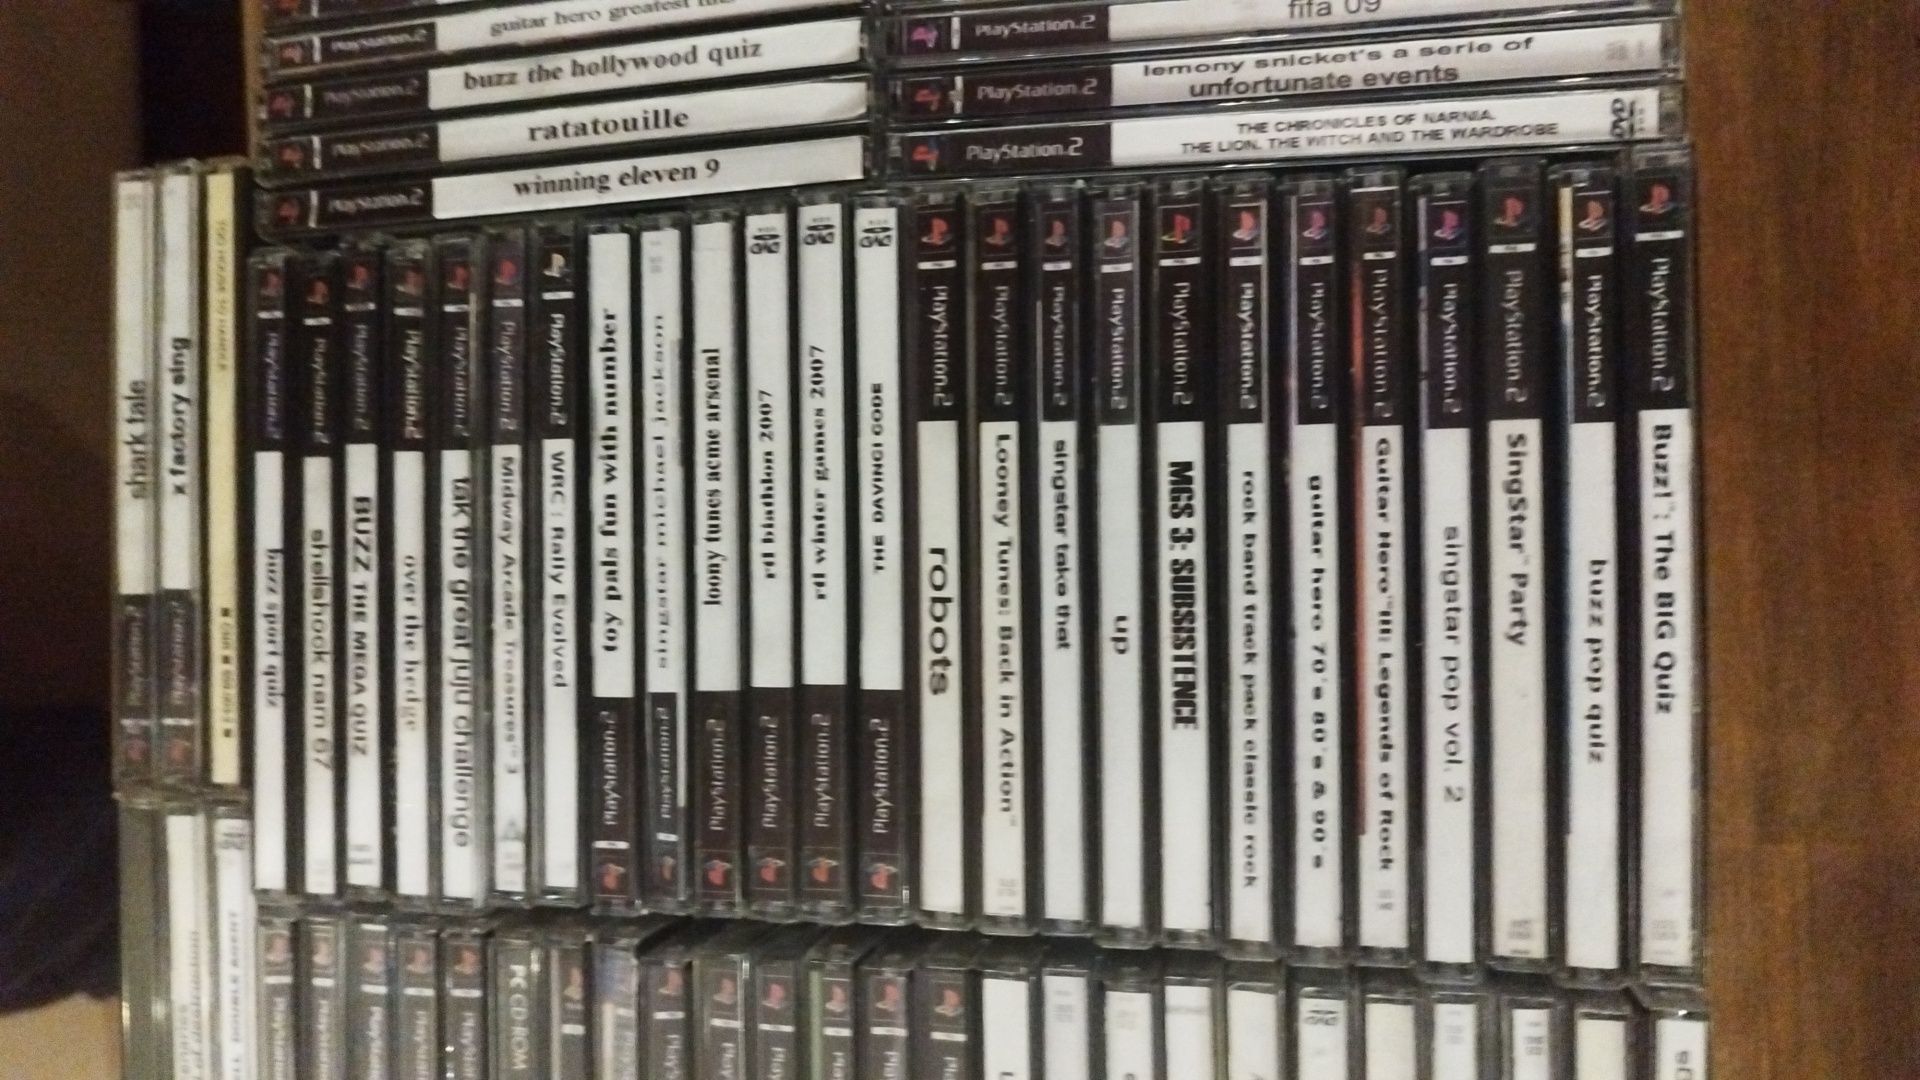 PlayStation 2 plus 2 pady plus 73 gry oraz oryg. karta pamieci